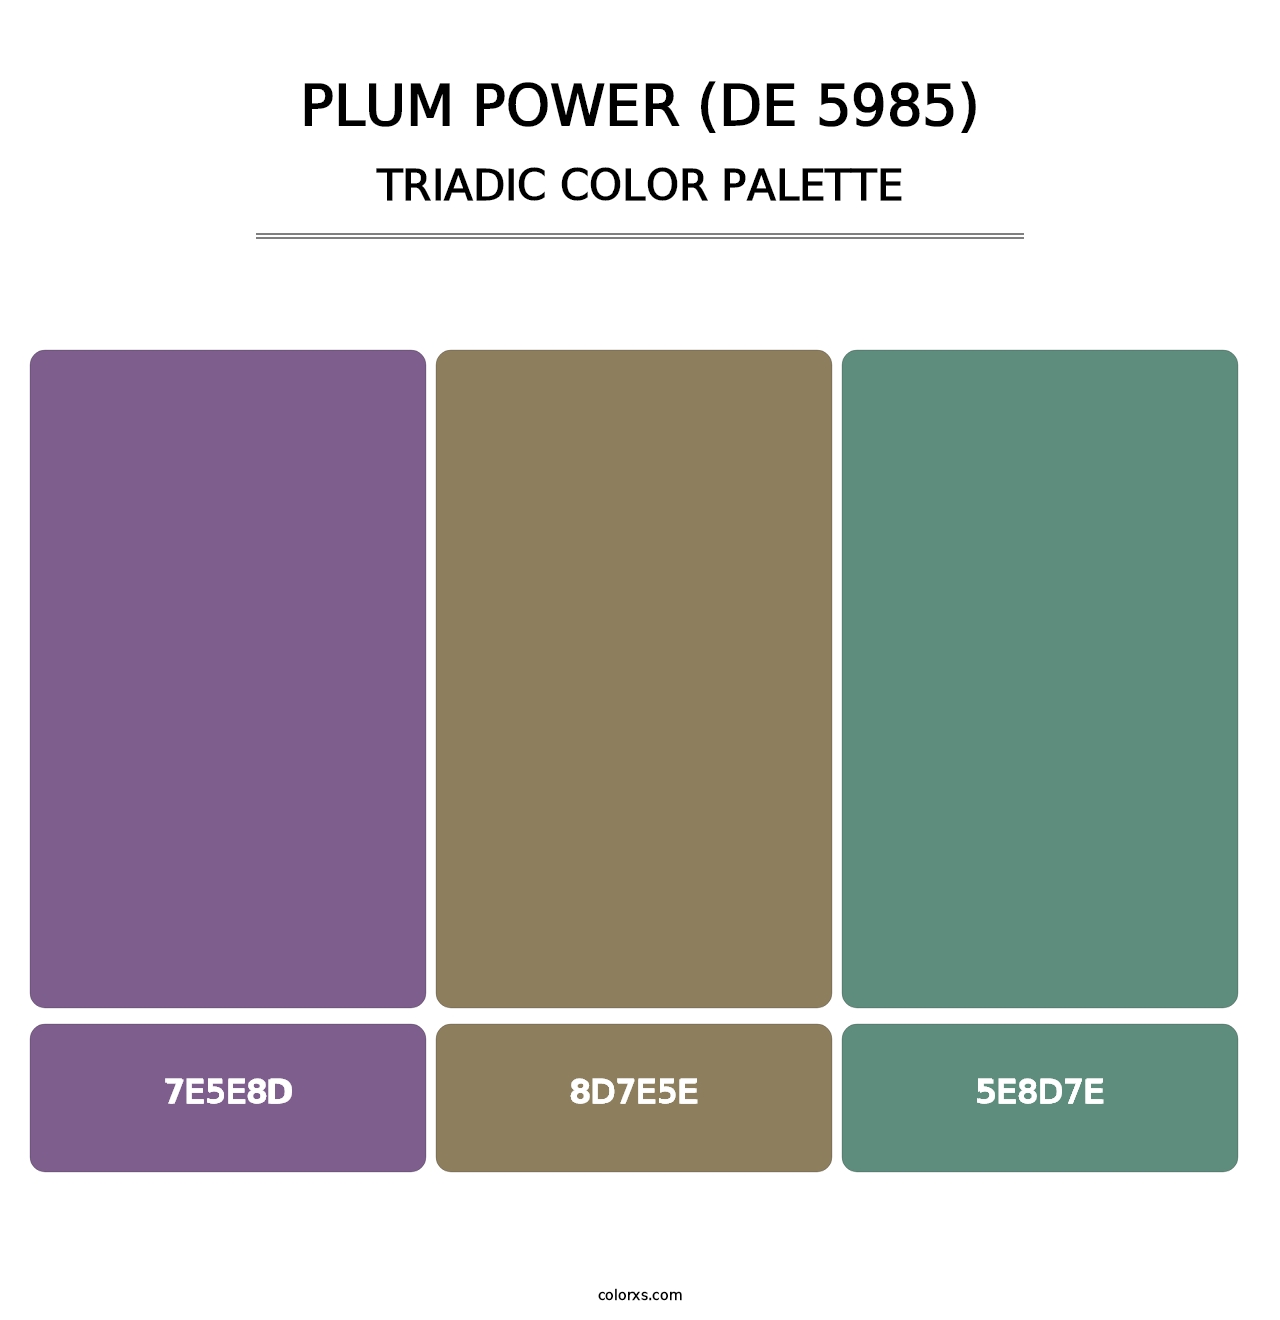 Plum Power (DE 5985) - Triadic Color Palette